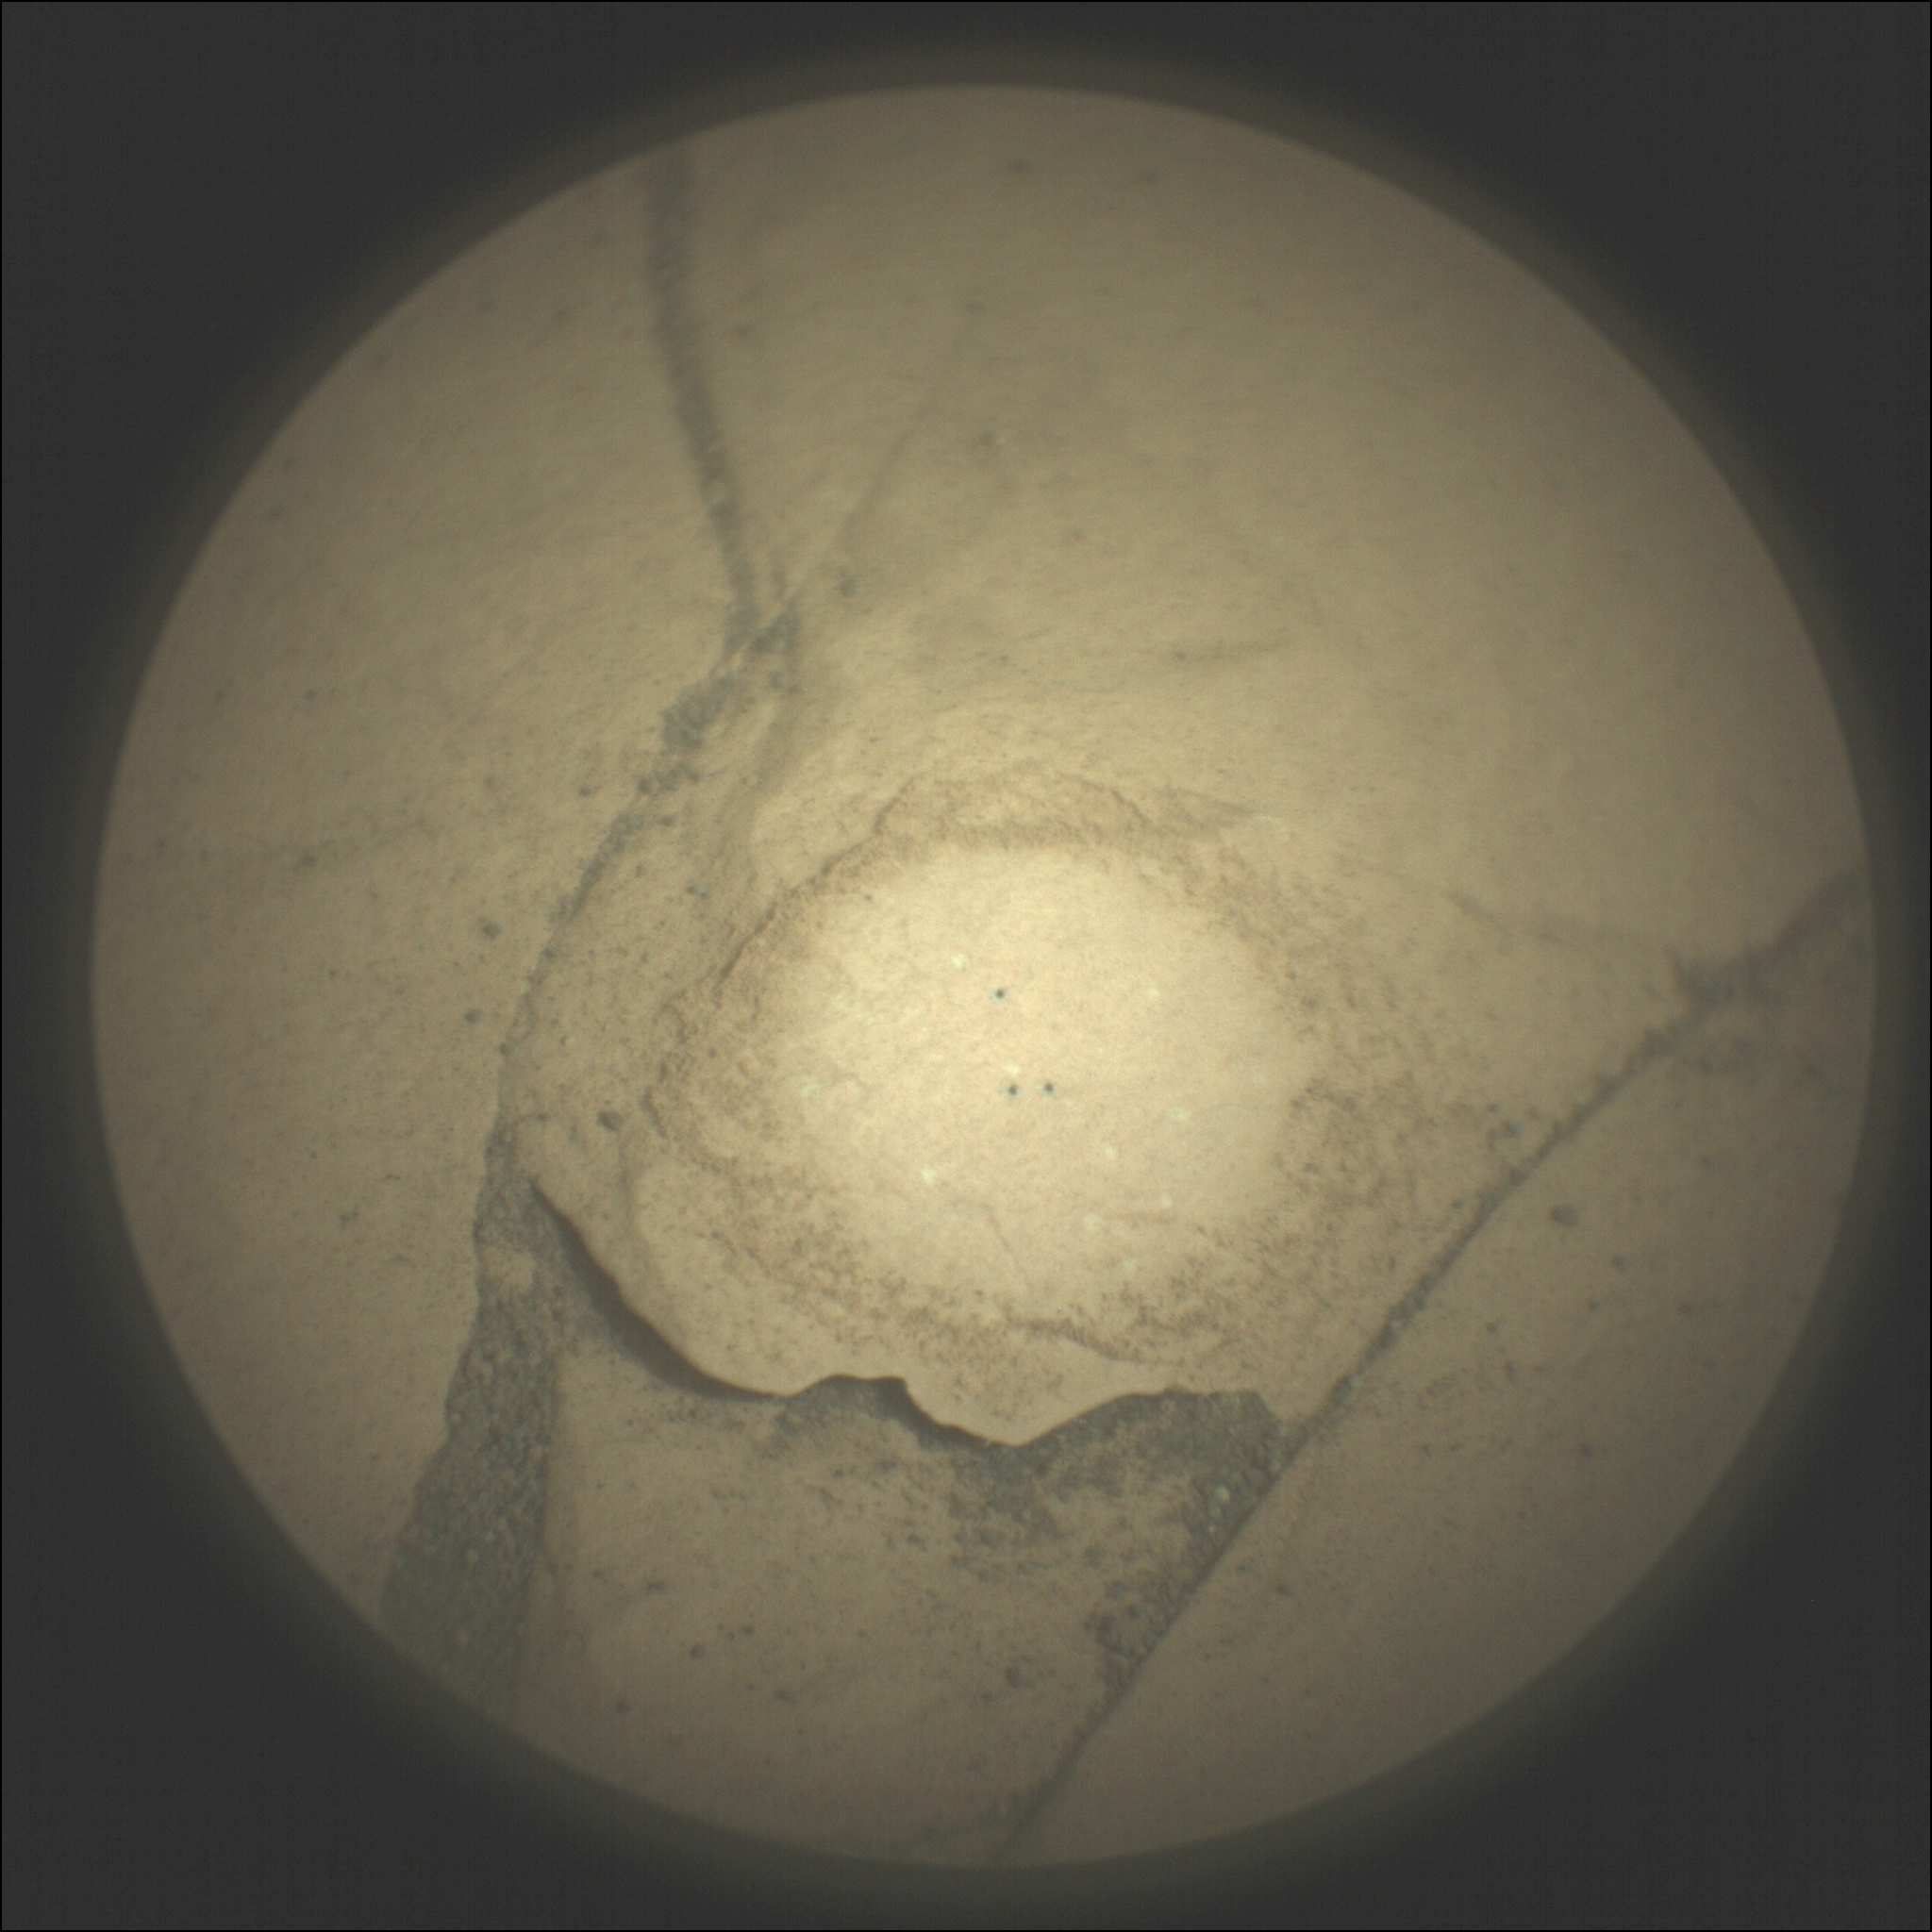  Это изображение было получено марсоходом NASA Mars Perseverance с помощью удаленного микровизора SuperCam. Изображение предоставлено: NASA/JPL-Caltech/LANL/CNES/IRAP.